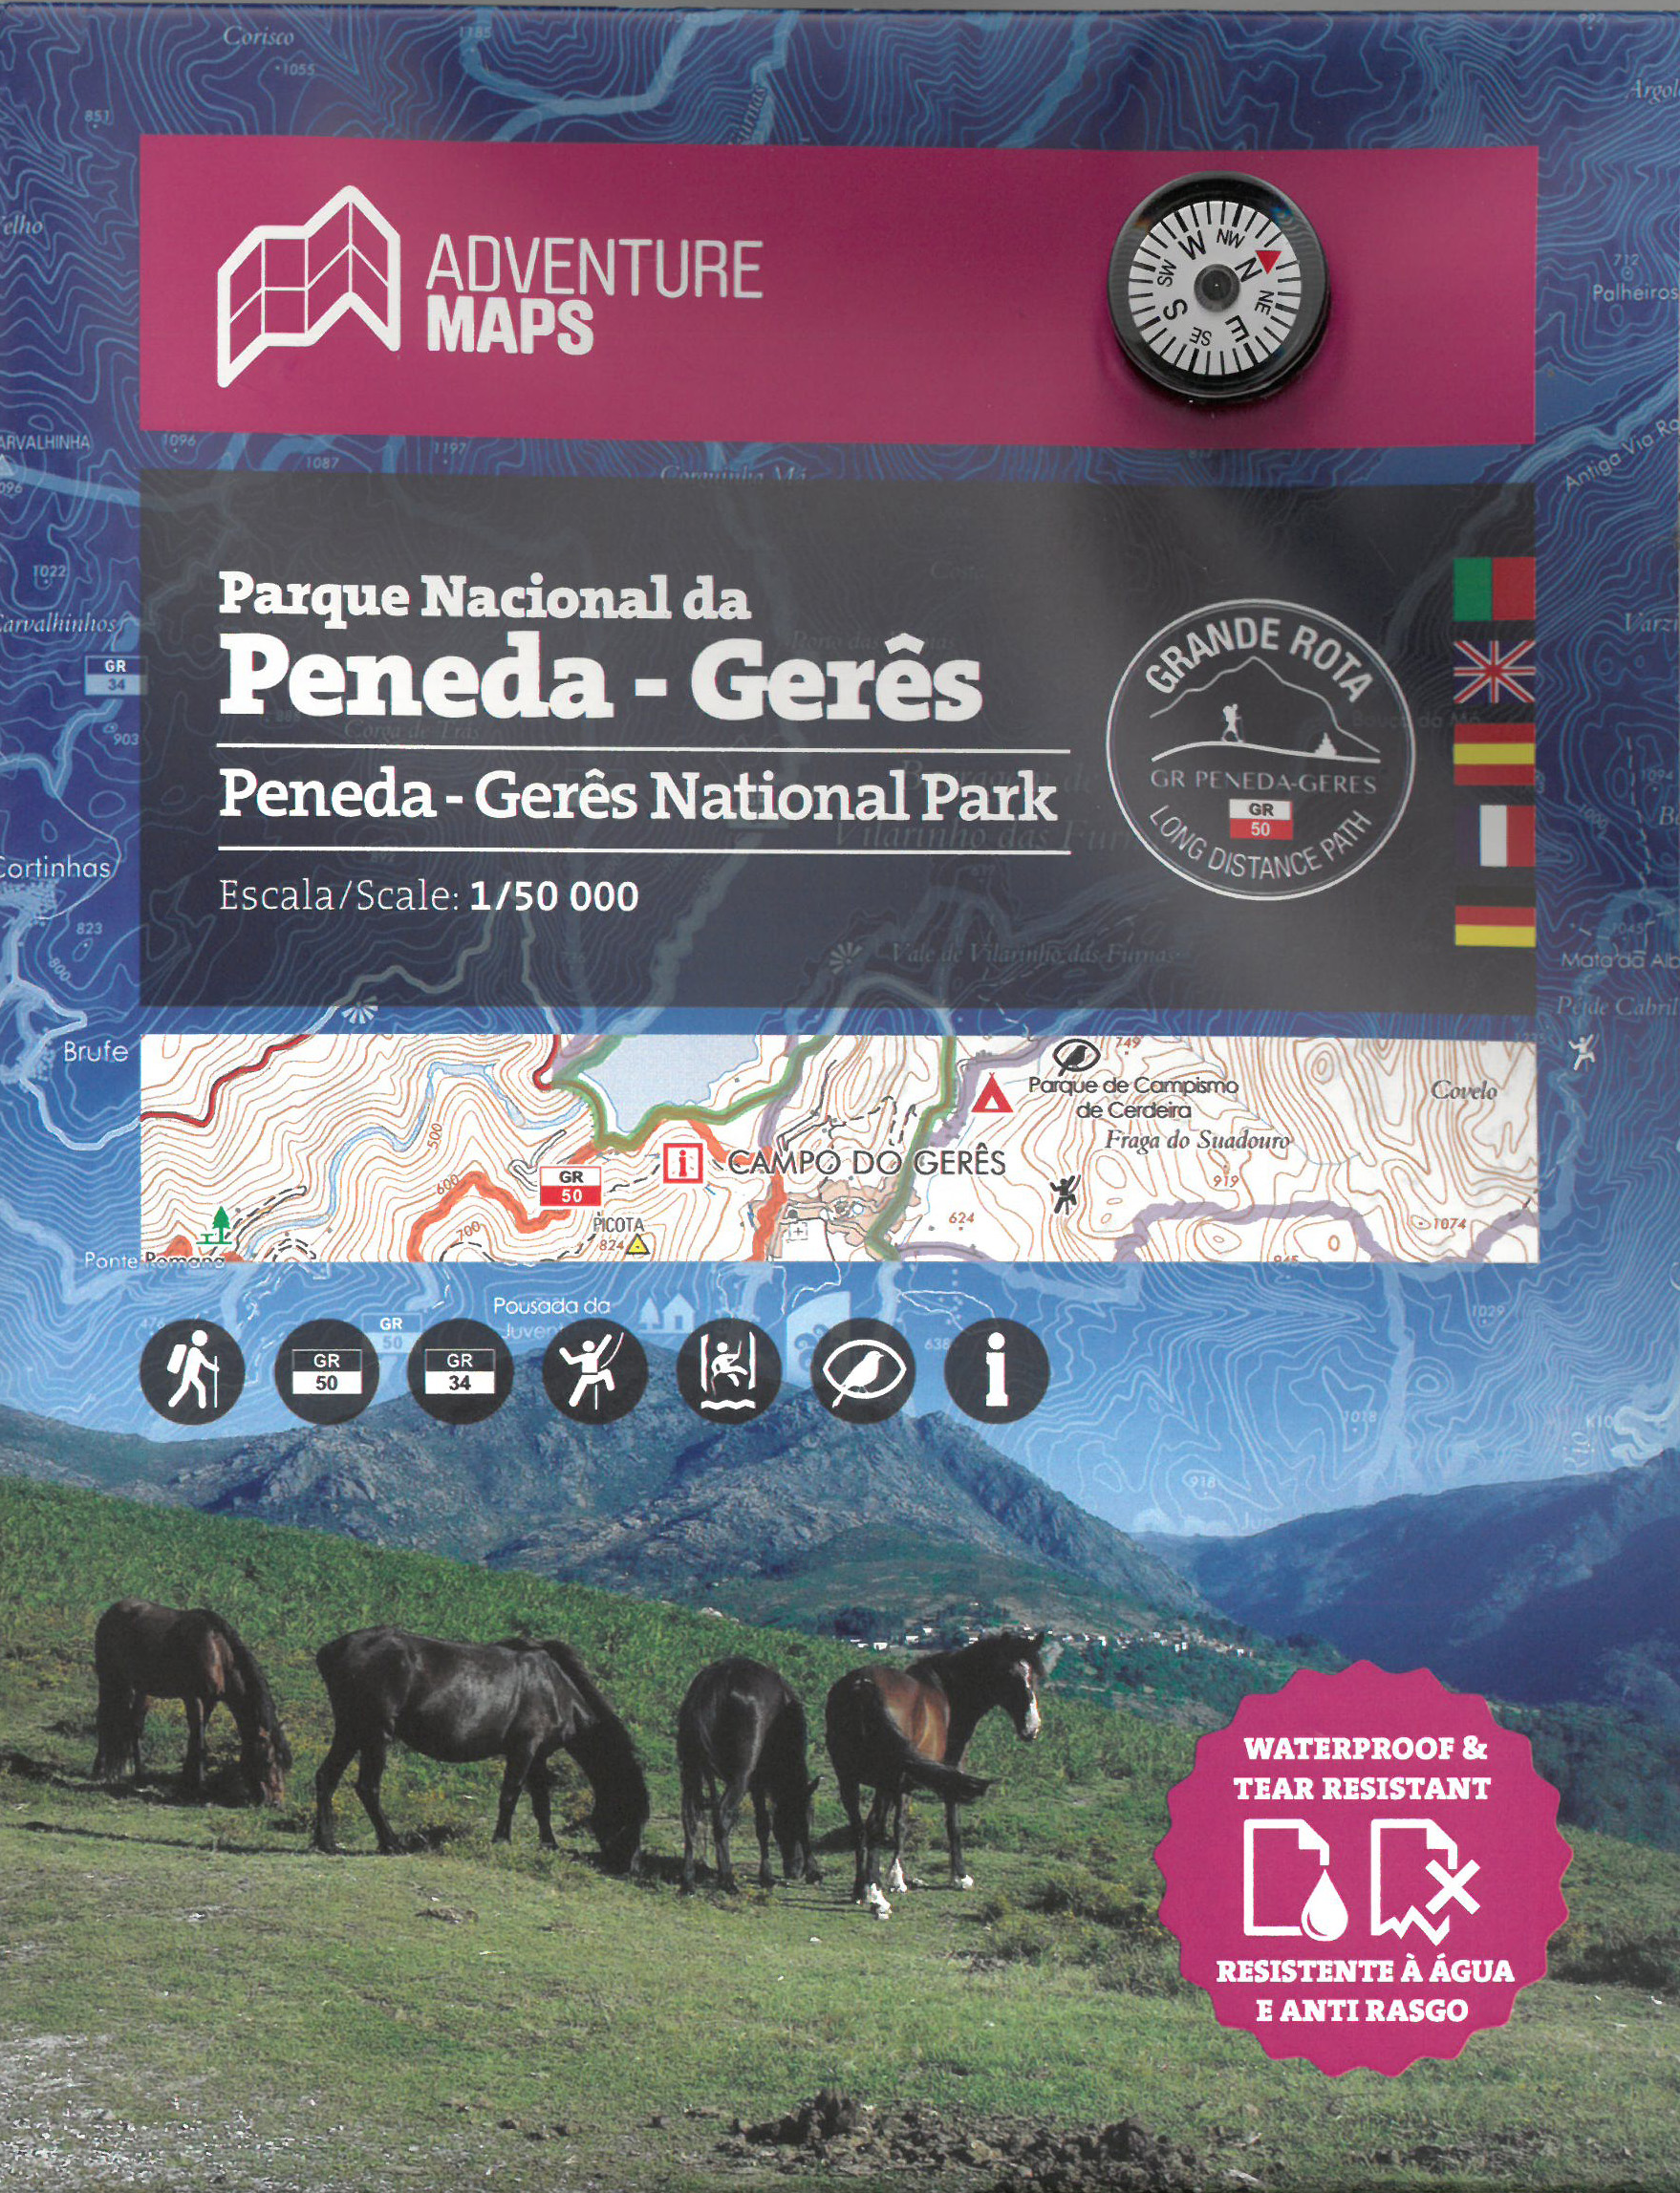 Parque Nacional da Peneda - Gerês